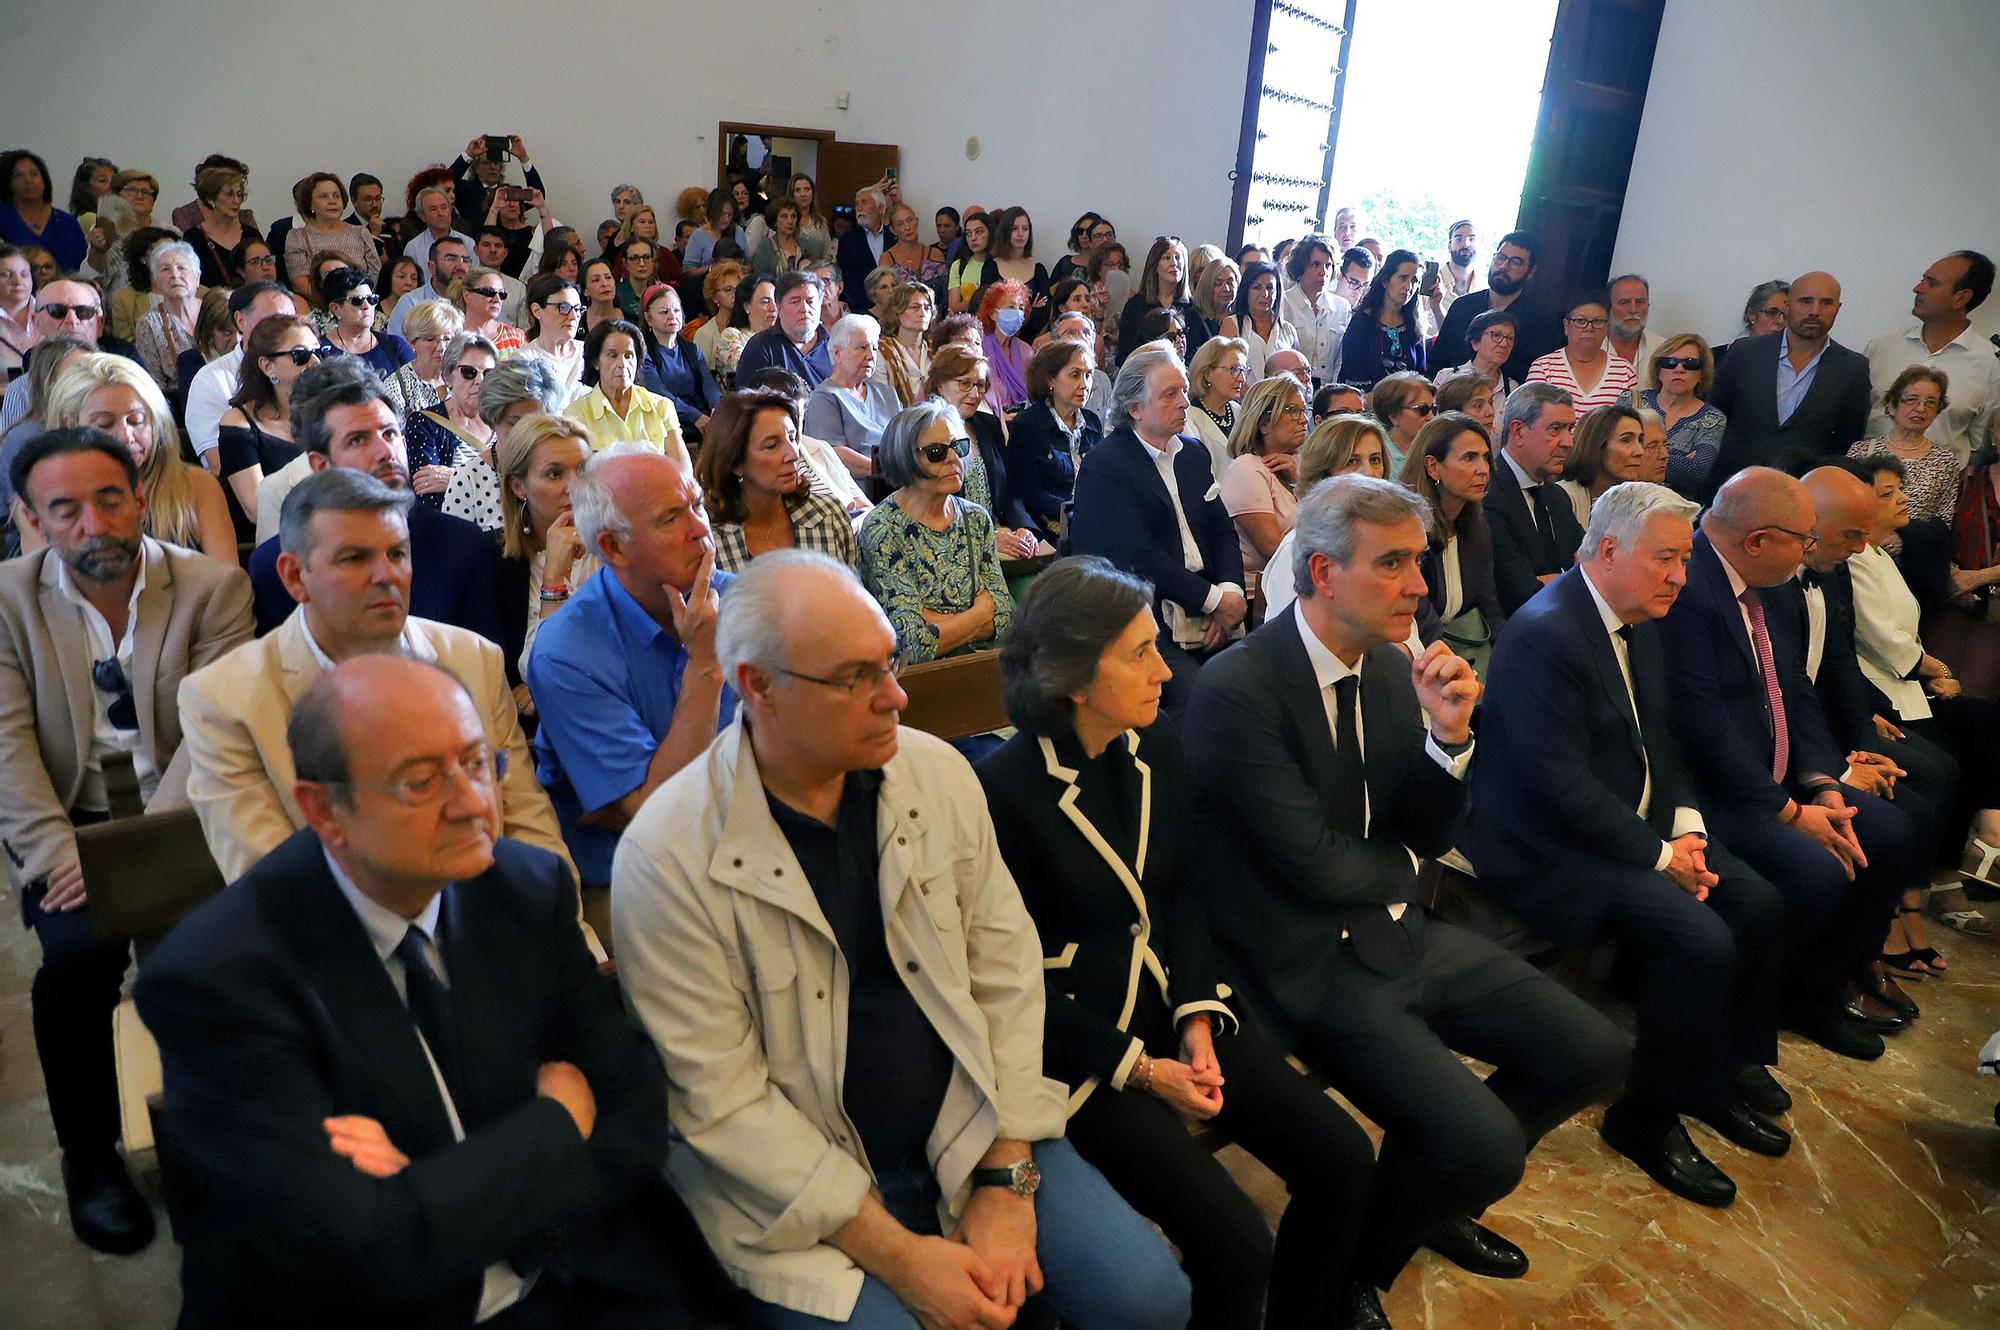 El pueblo de Córdoba ofrece la última despedida a Antonio Gala en su Fundación